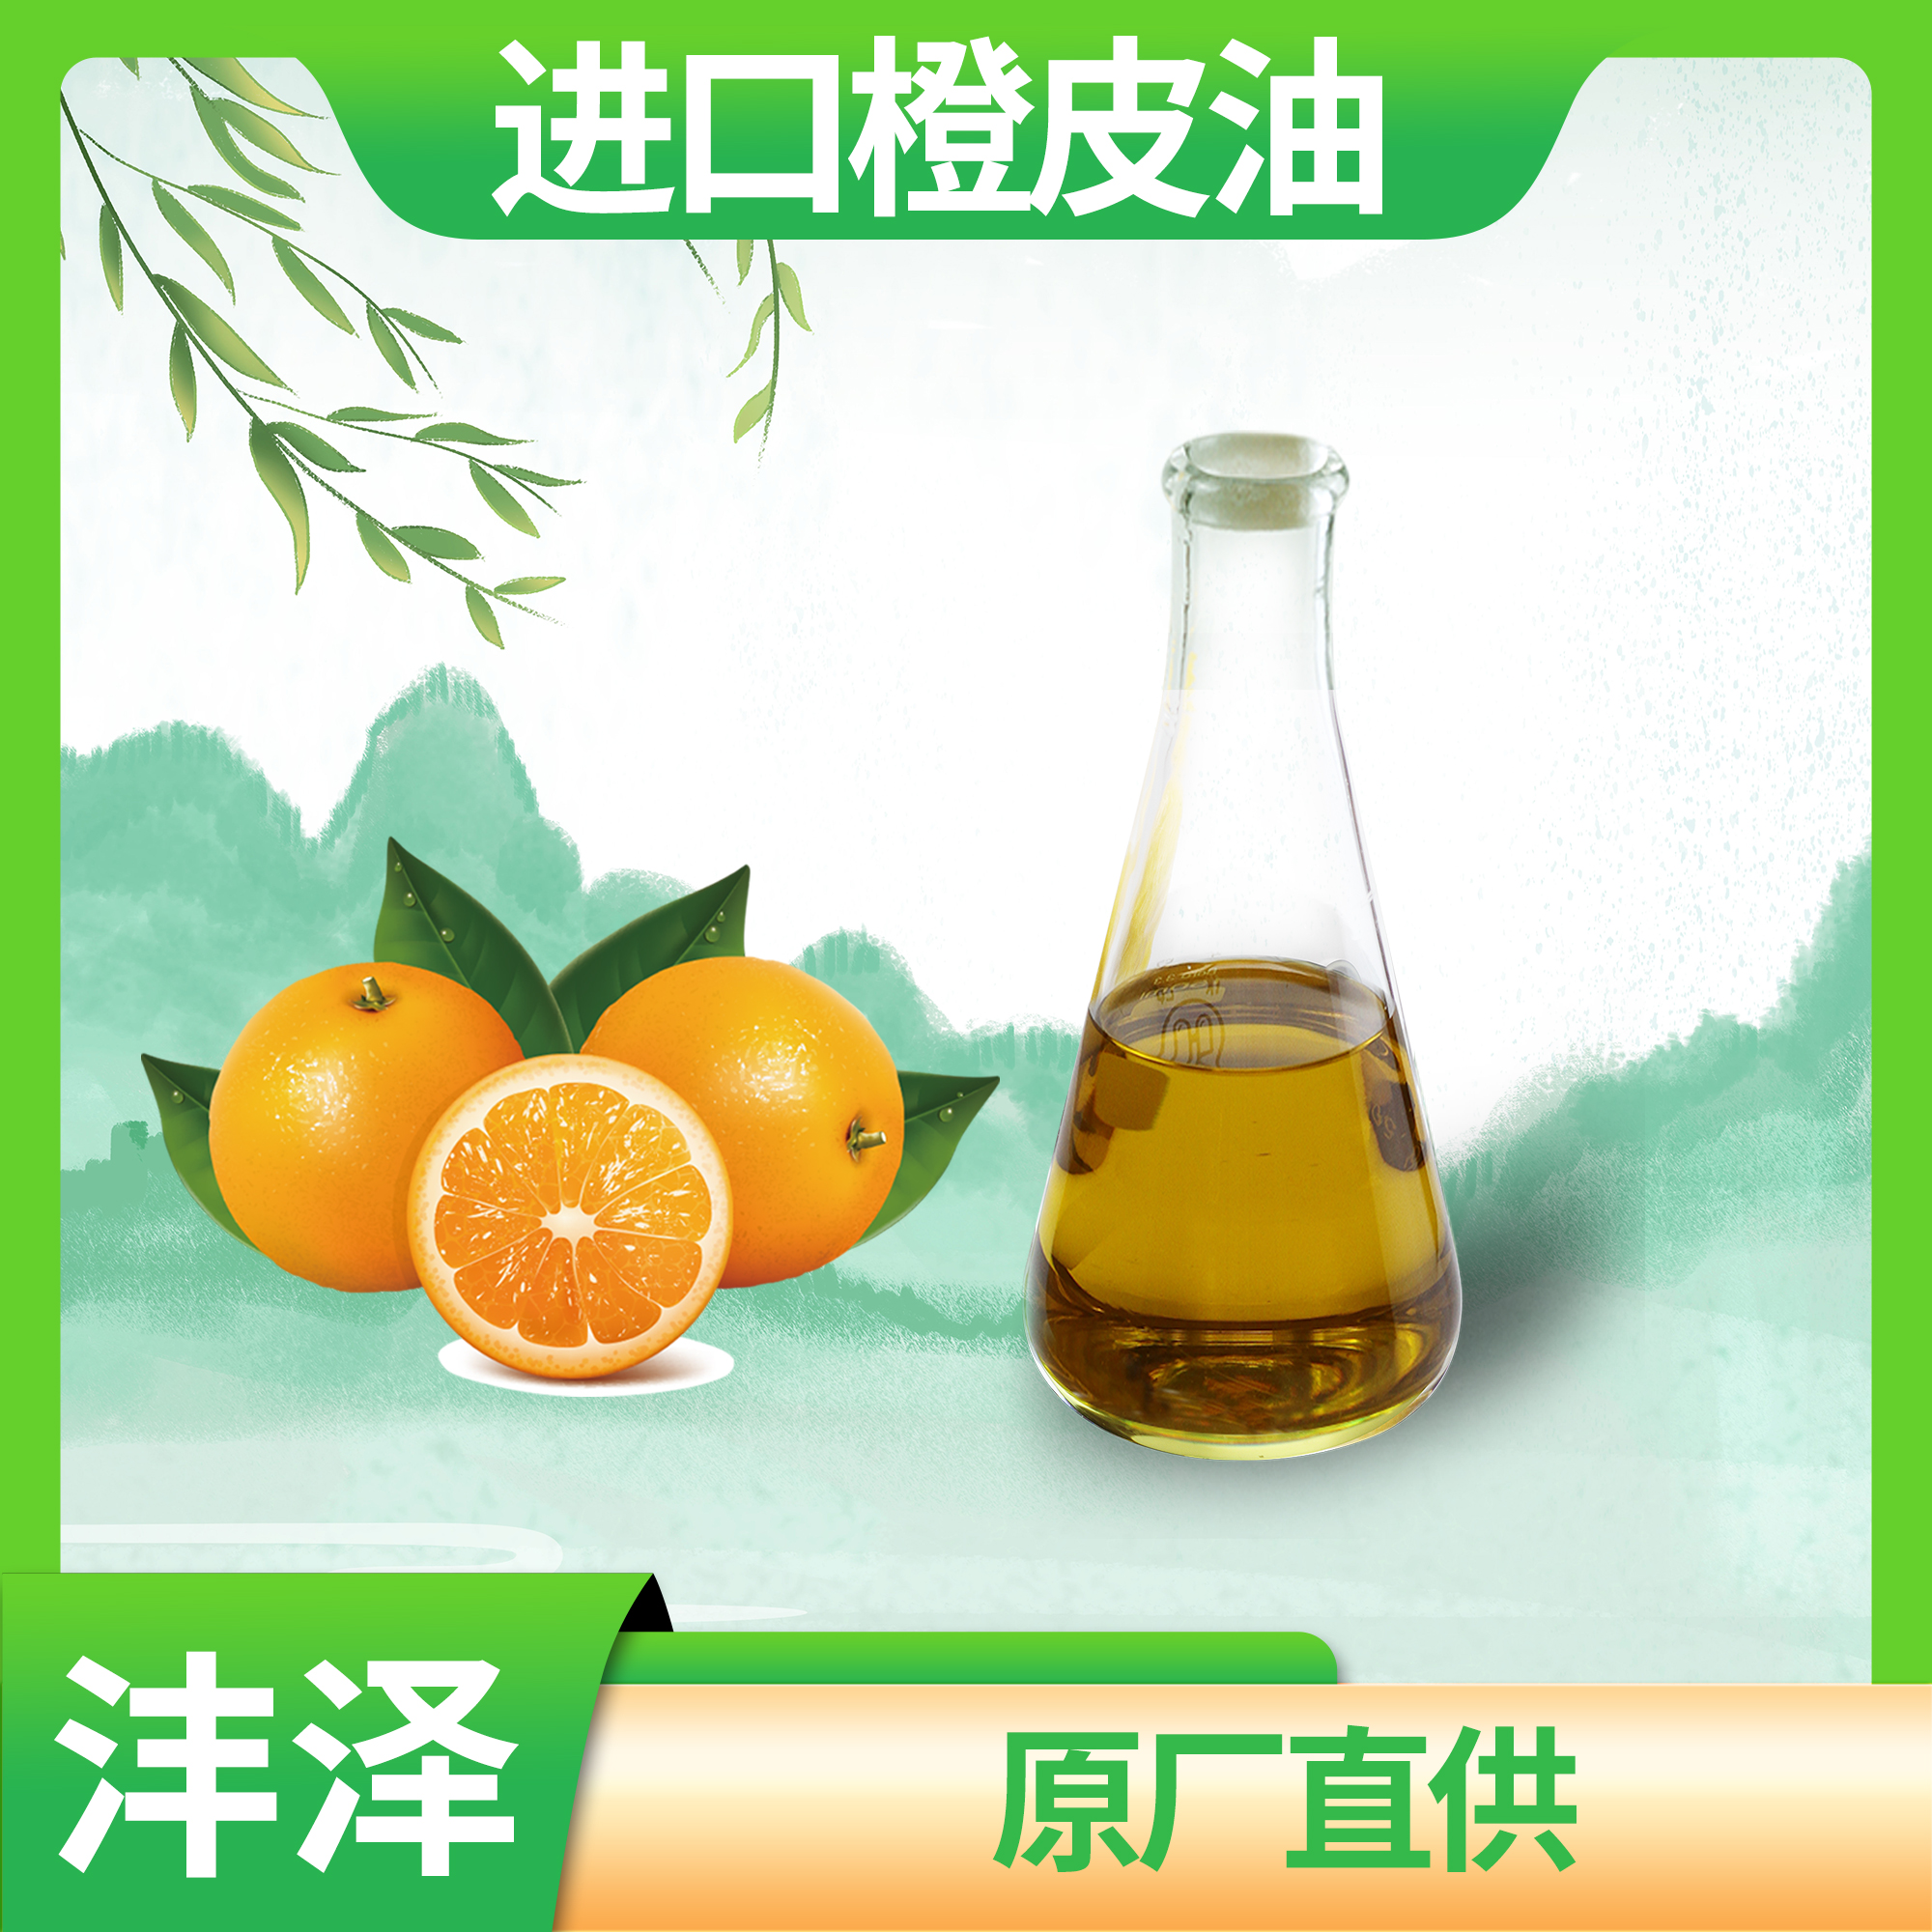 萃取橙皮油 植物甜橙精油橙油 不满意免费退换货【沣泽】